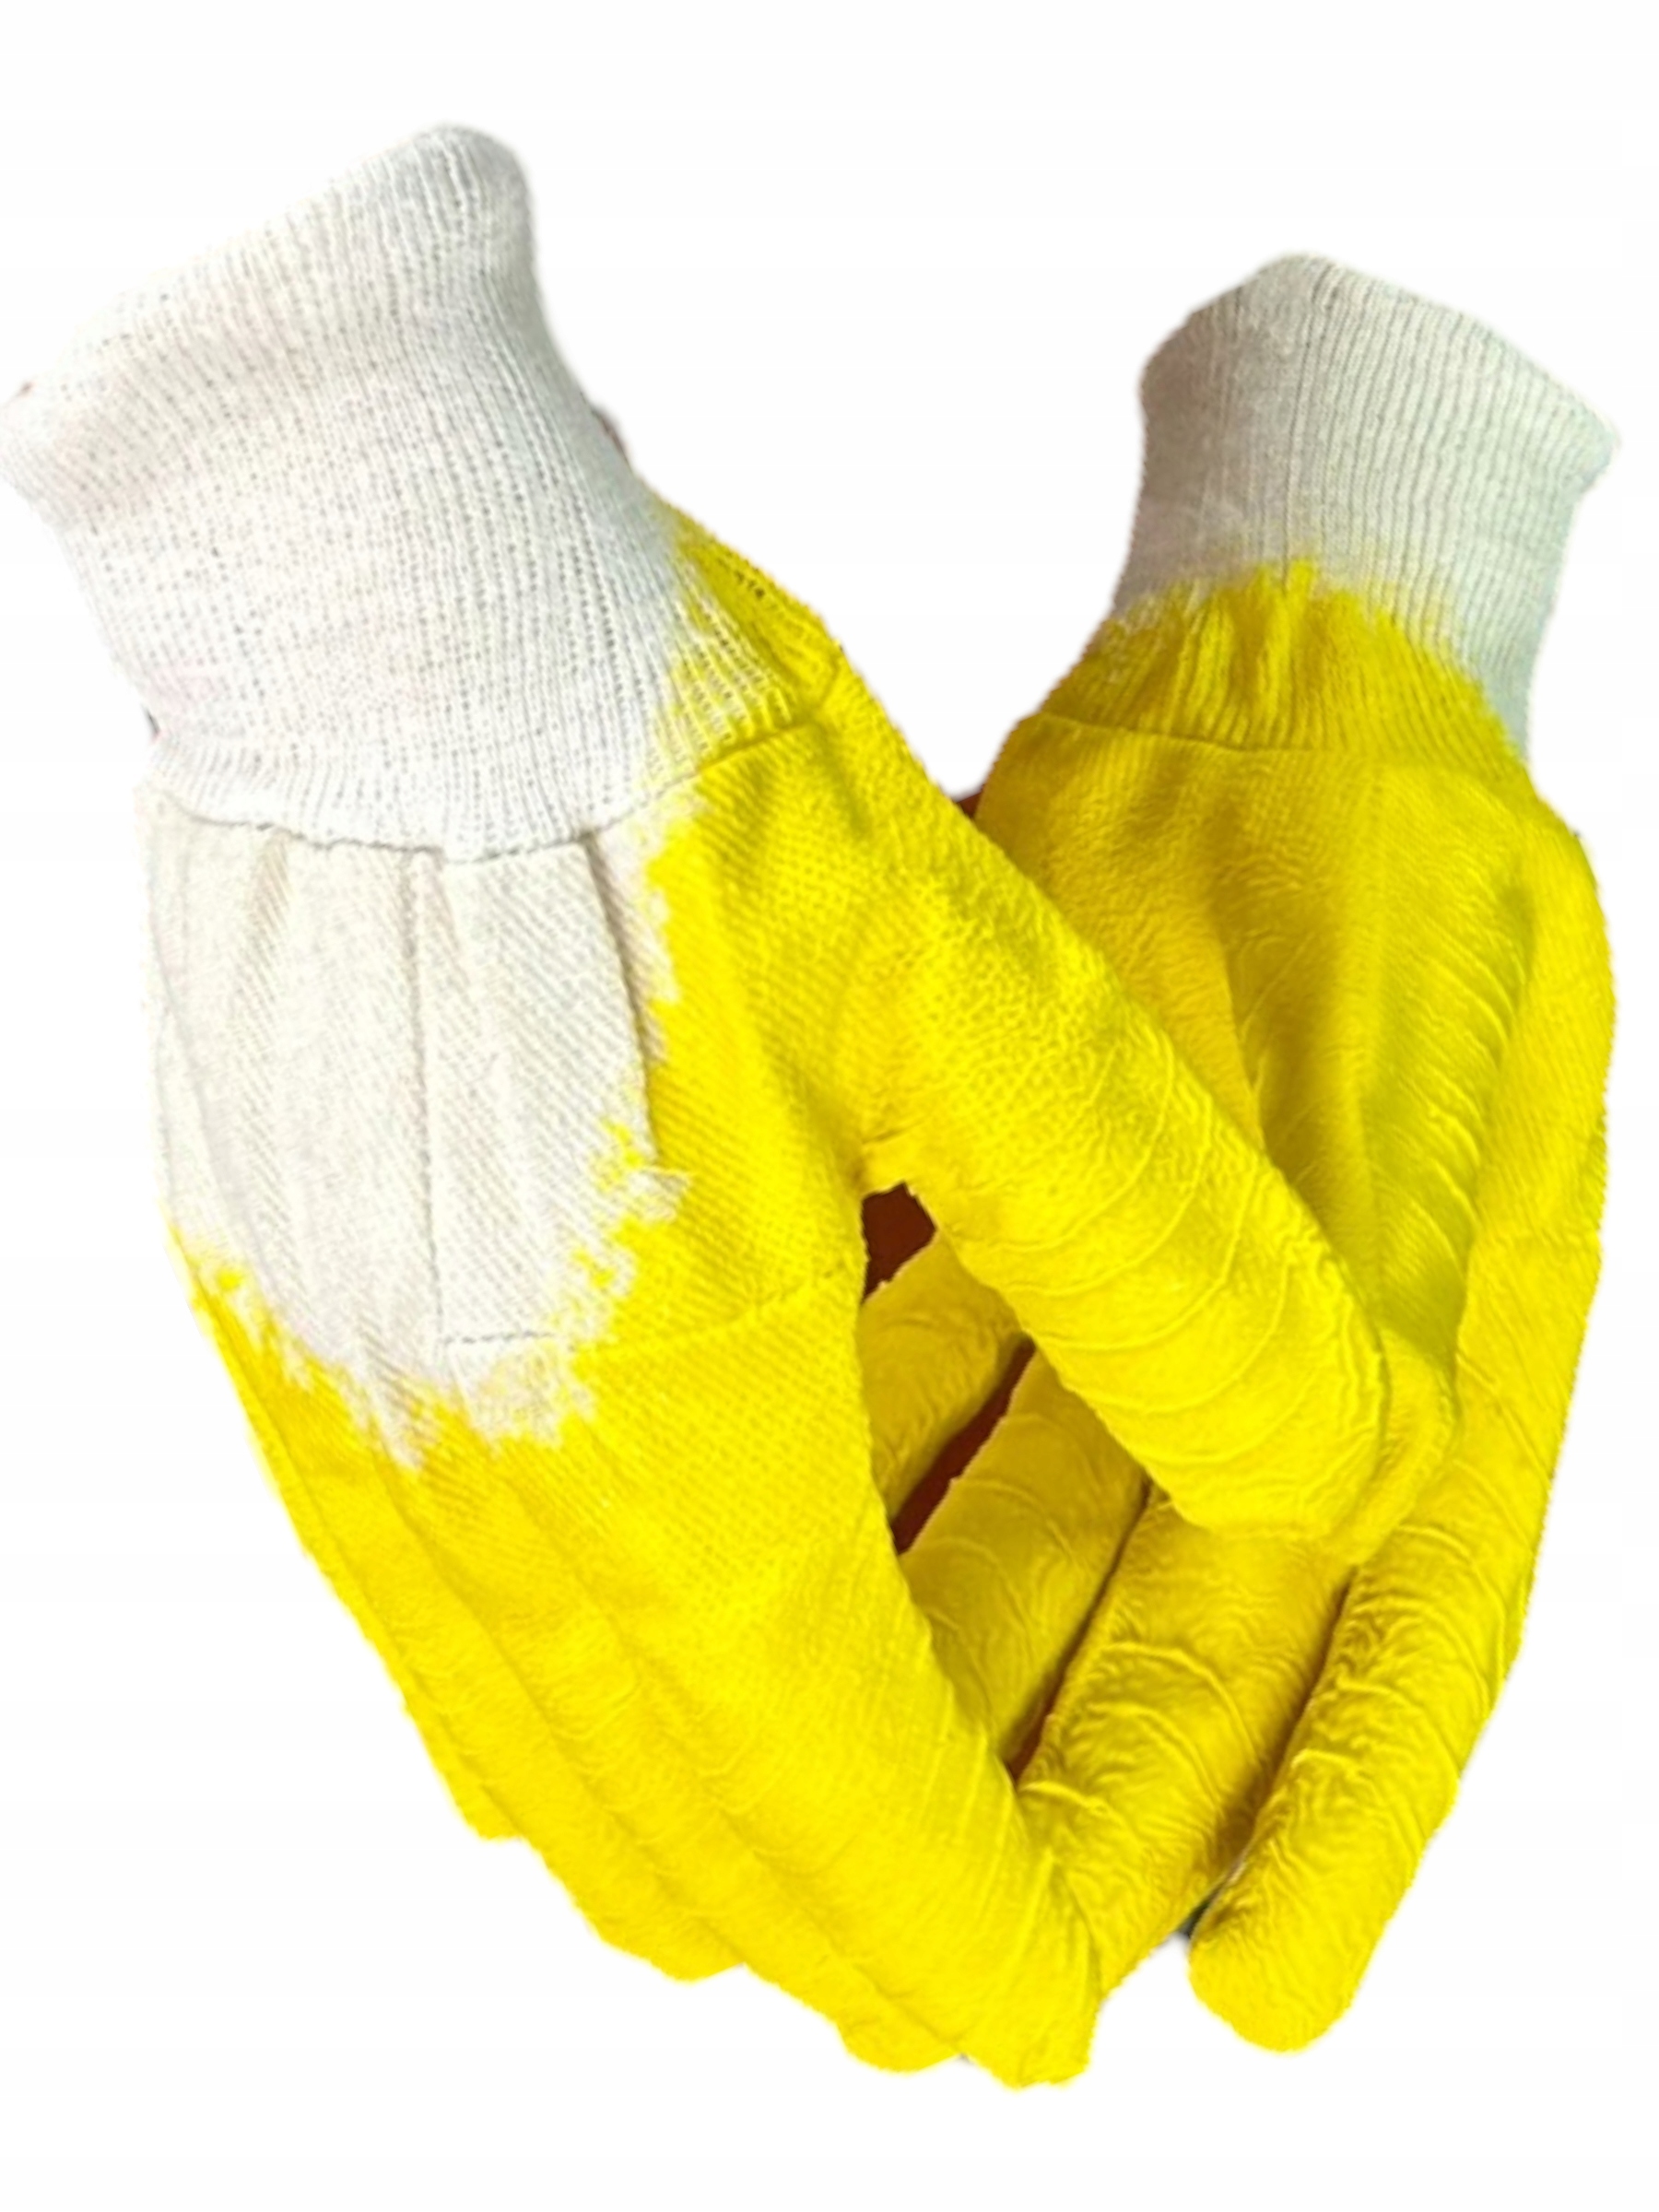 Rękawice robocze żółte PREMIUM r.10/XL 1 para